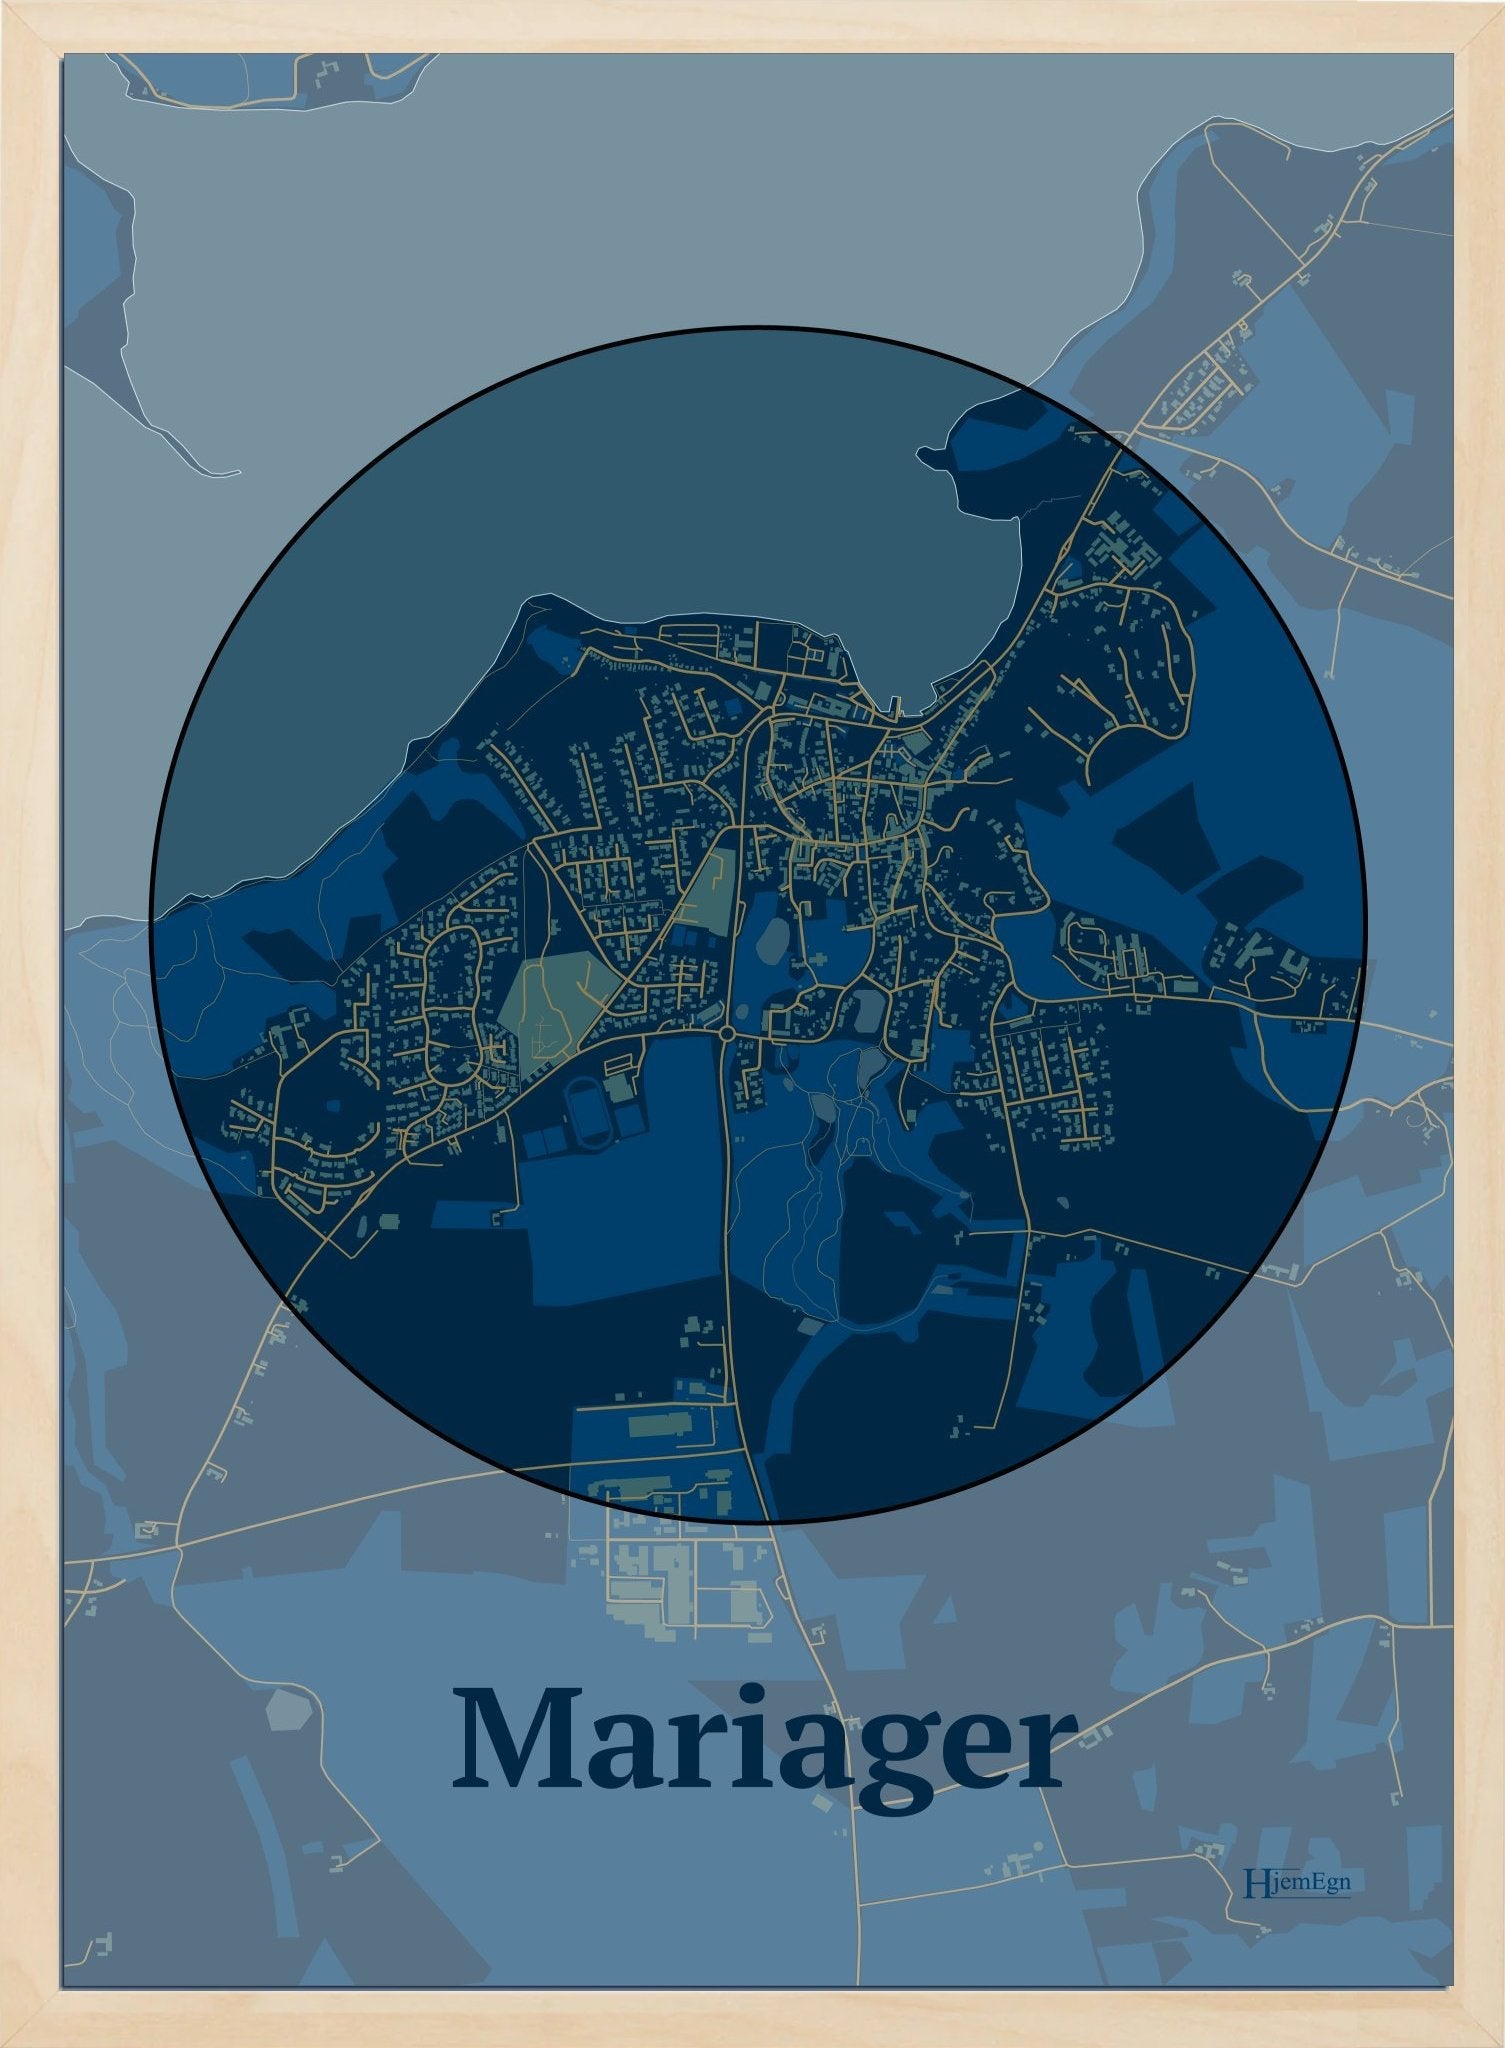 Mariager plakat i farve mørk blå og HjemEgn.dk design centrum. Design bykort for Mariager